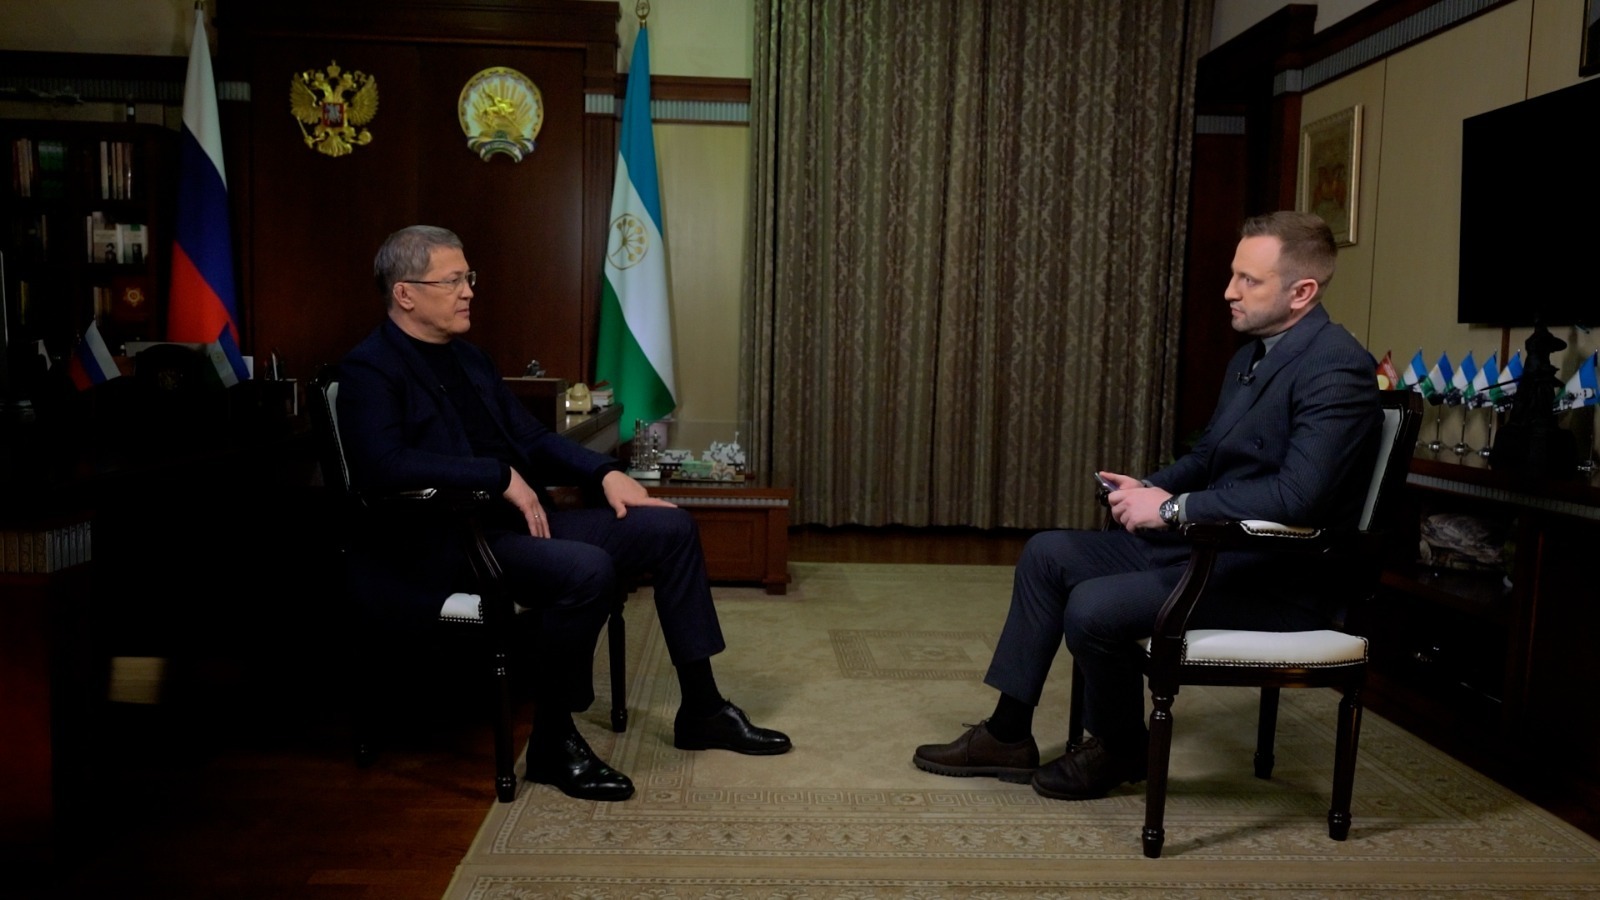 Глава Башкортостана Радий Хабиров в канун своего юбилея дал эксклюзивное интервью телеканалу БСТ.